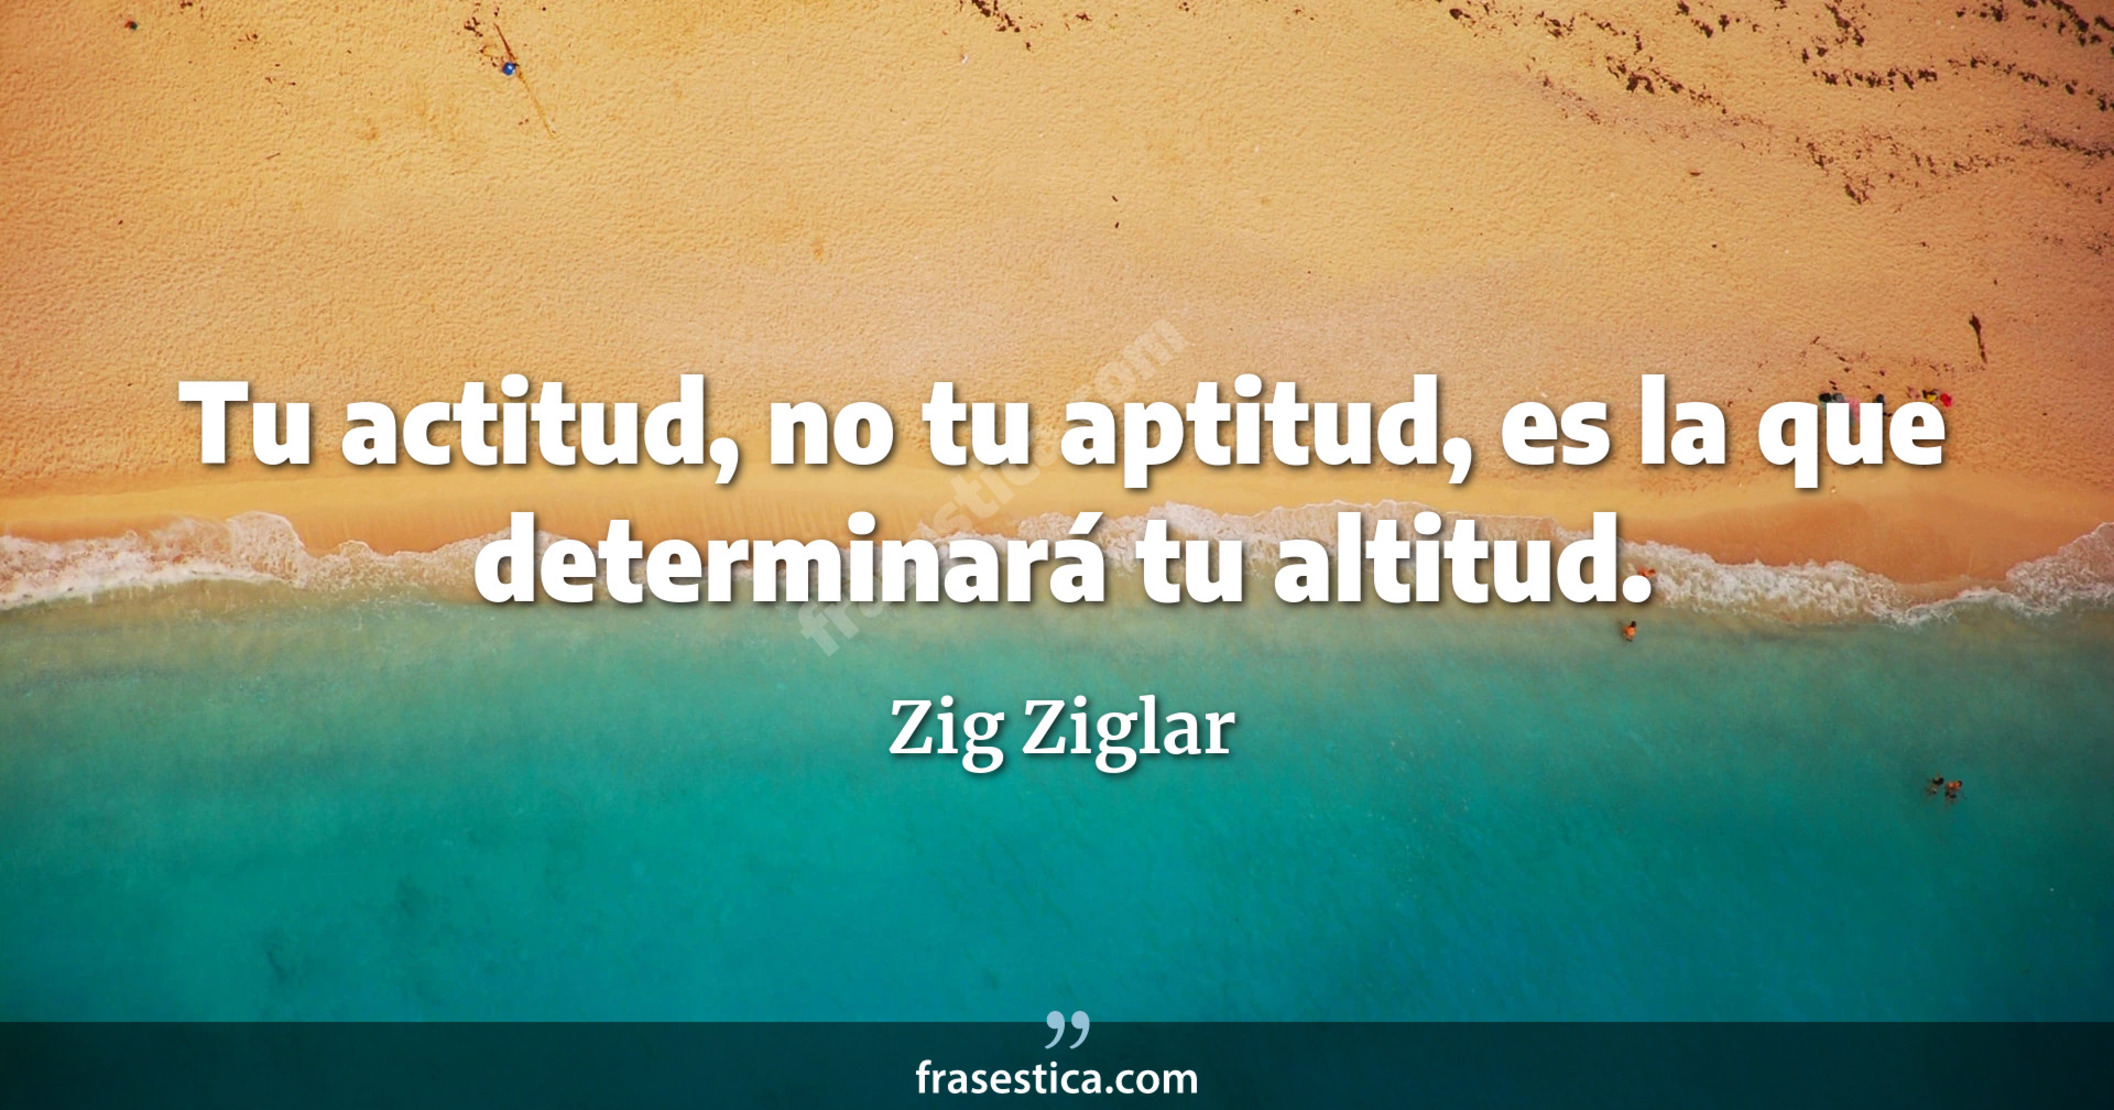 Tu actitud, no tu aptitud, es la que determinará tu altitud. - Zig Ziglar